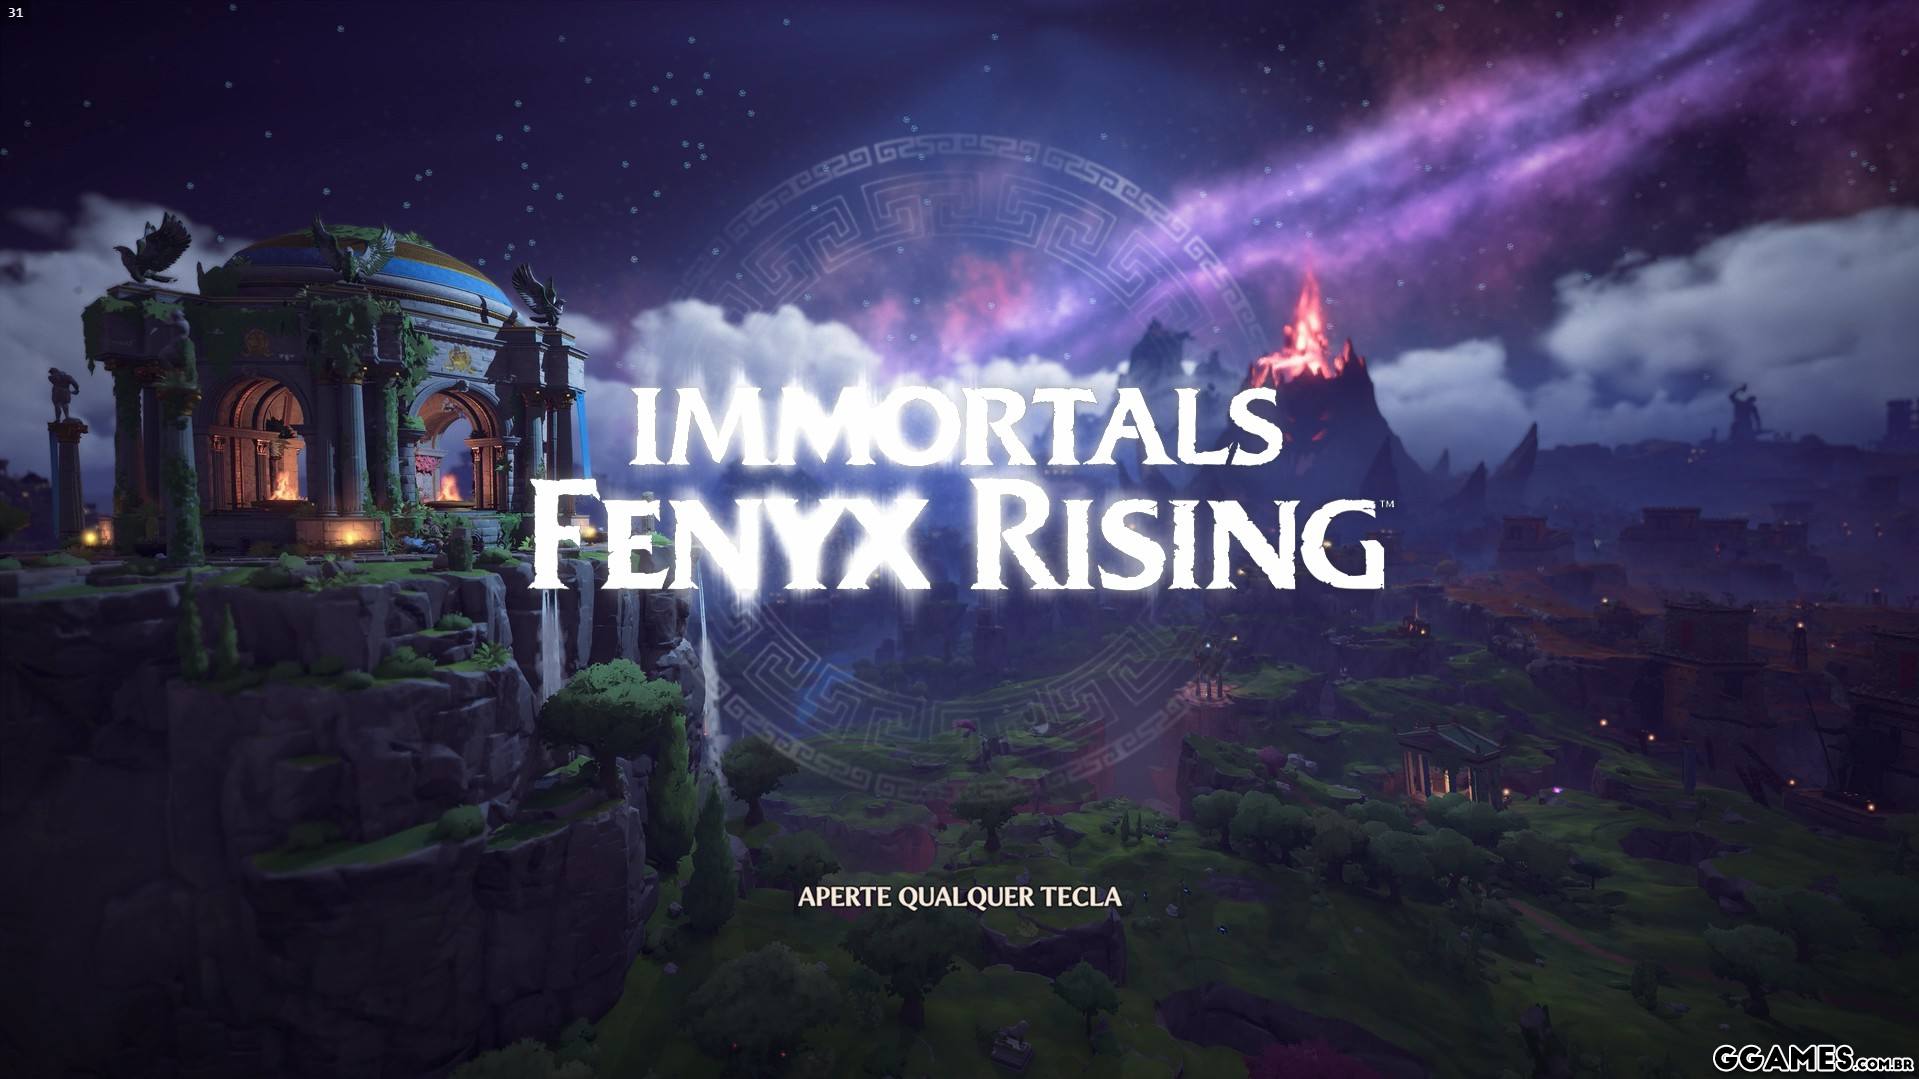 Immortals Fenyx Rising™ - Inventory Editor - Immortals Store Items - Load